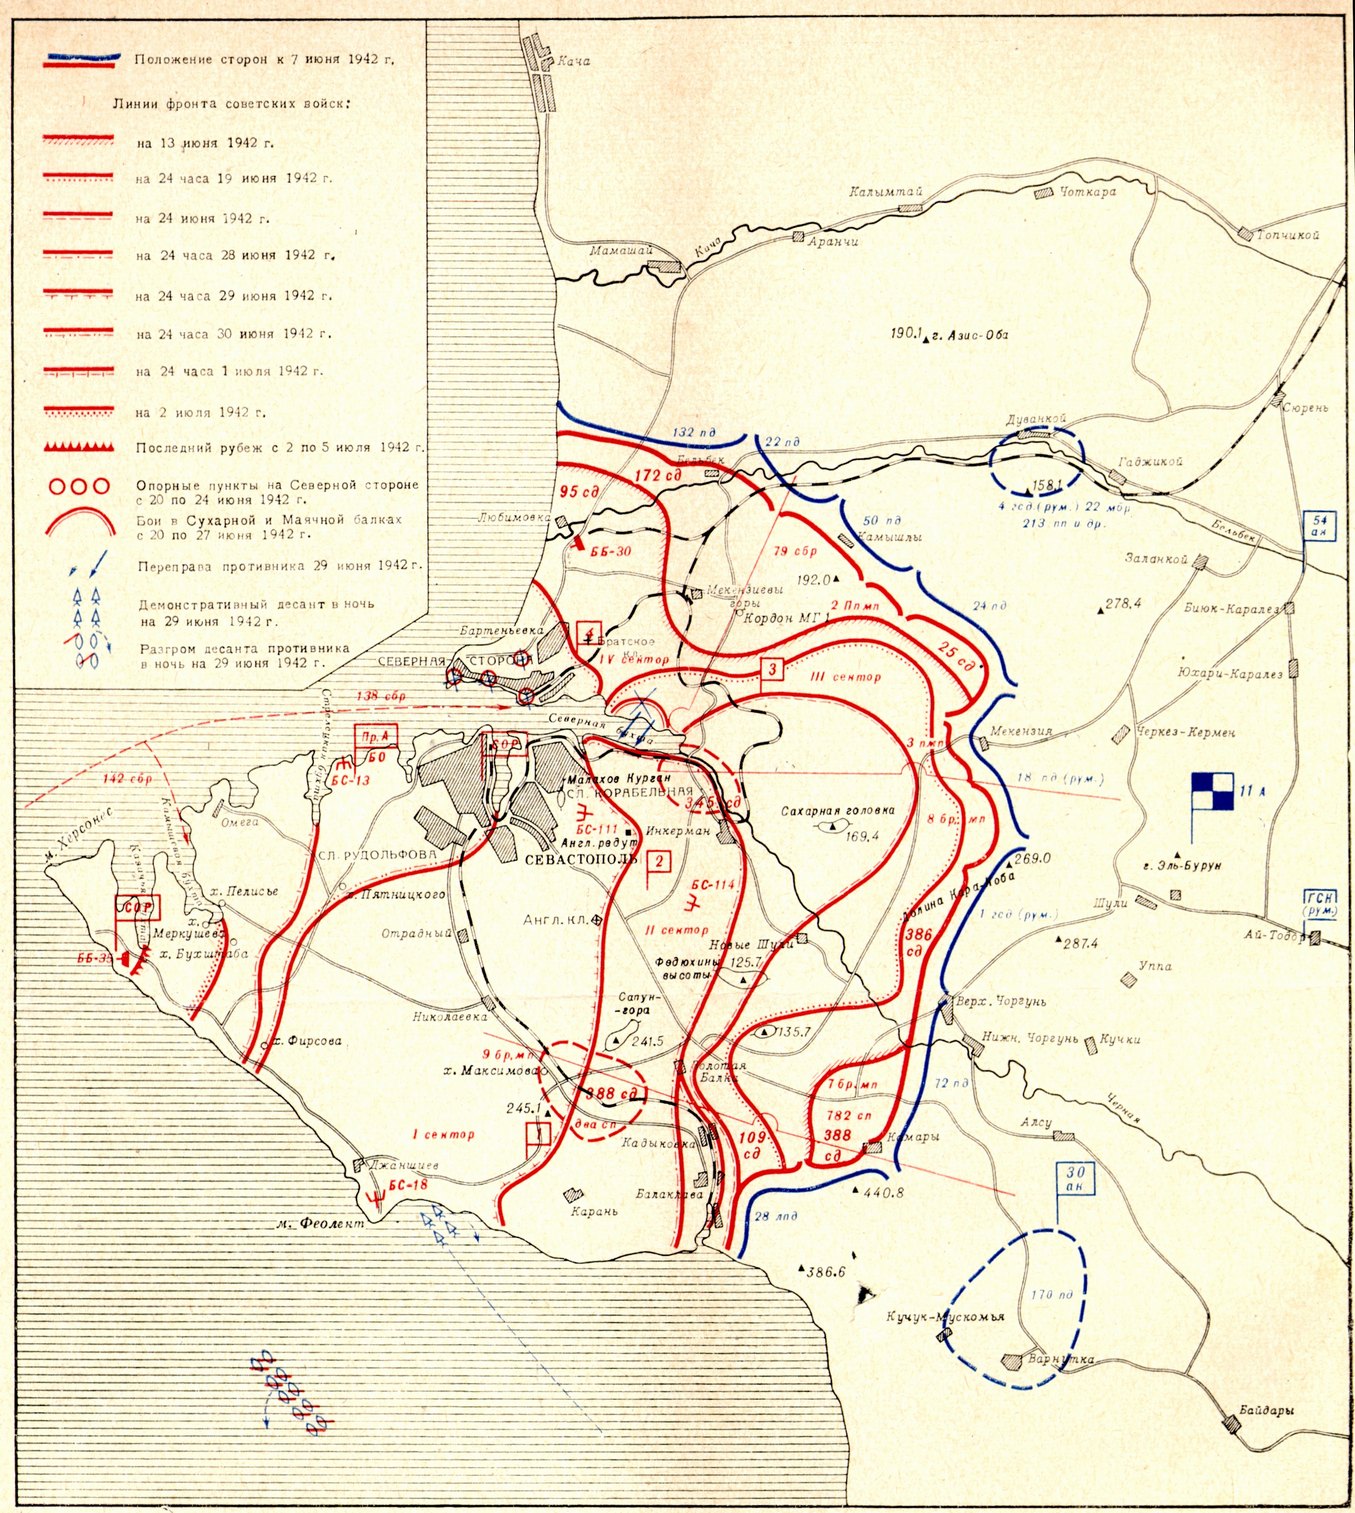 Третье наступление немецко-фашистских войск 7 нюня — 4 июля 1942 г